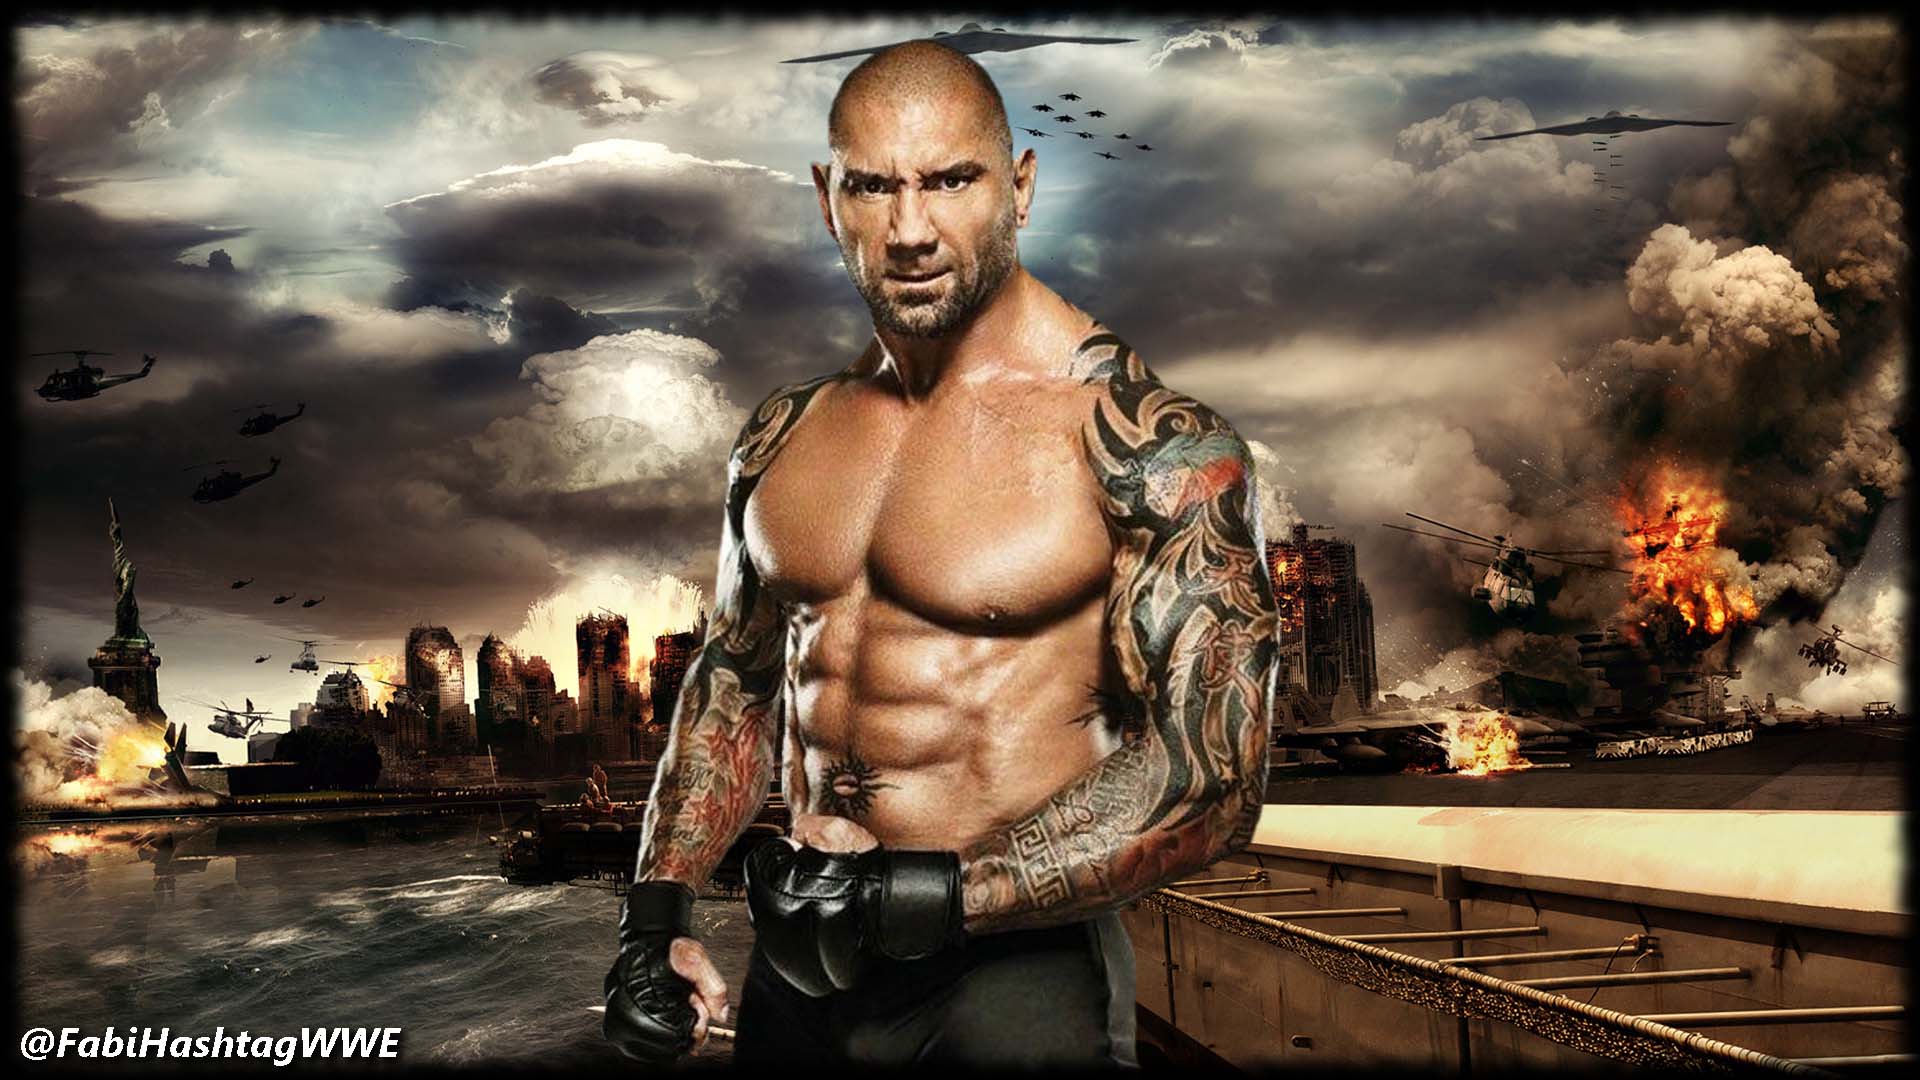 Lovely Poster Of Batista Popular Wrestler